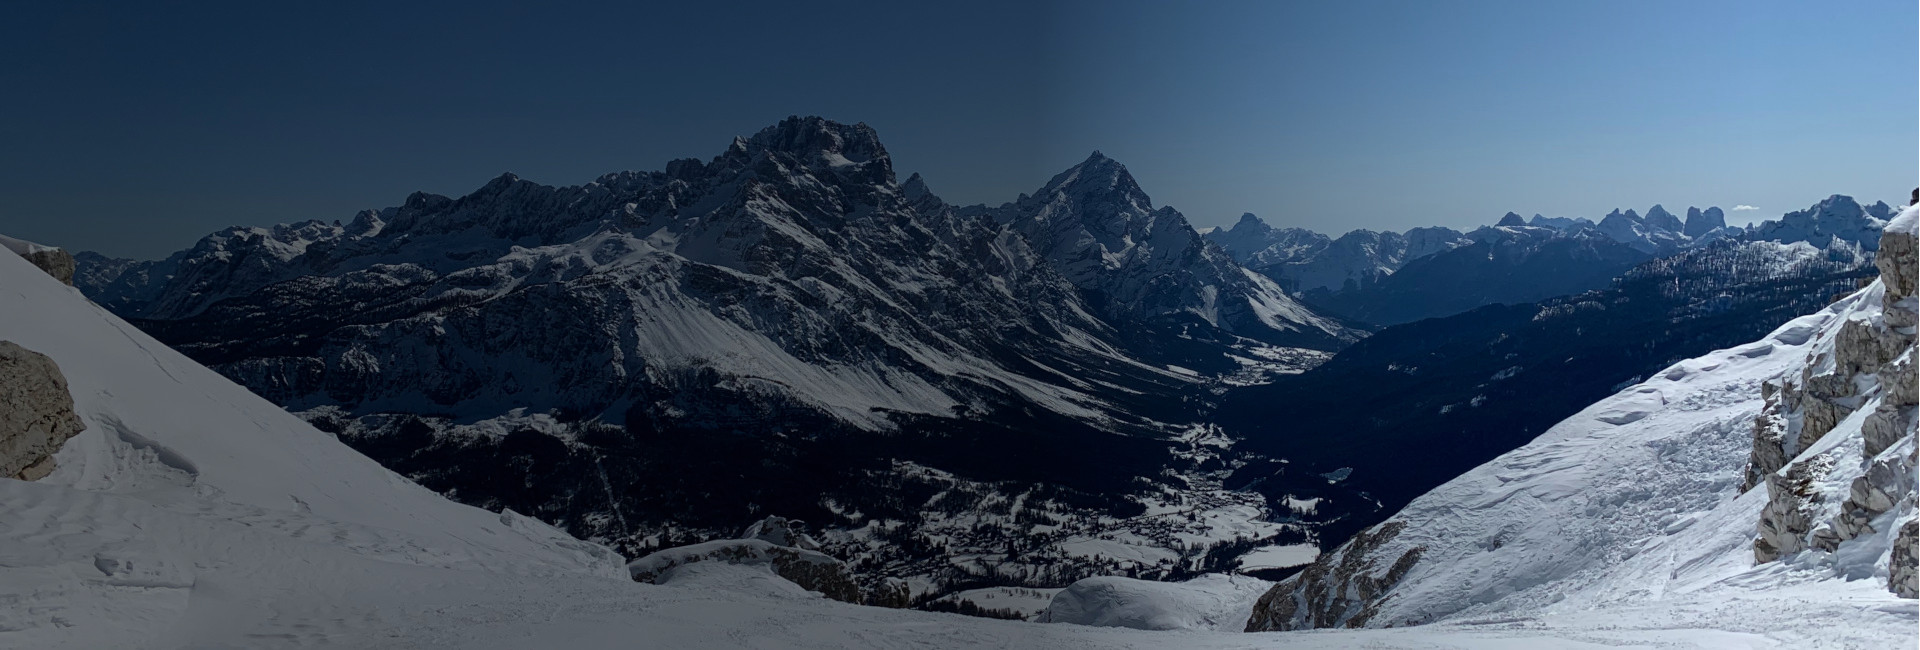 Vista panoramica delle montagne di Cortina d'Ampezzo